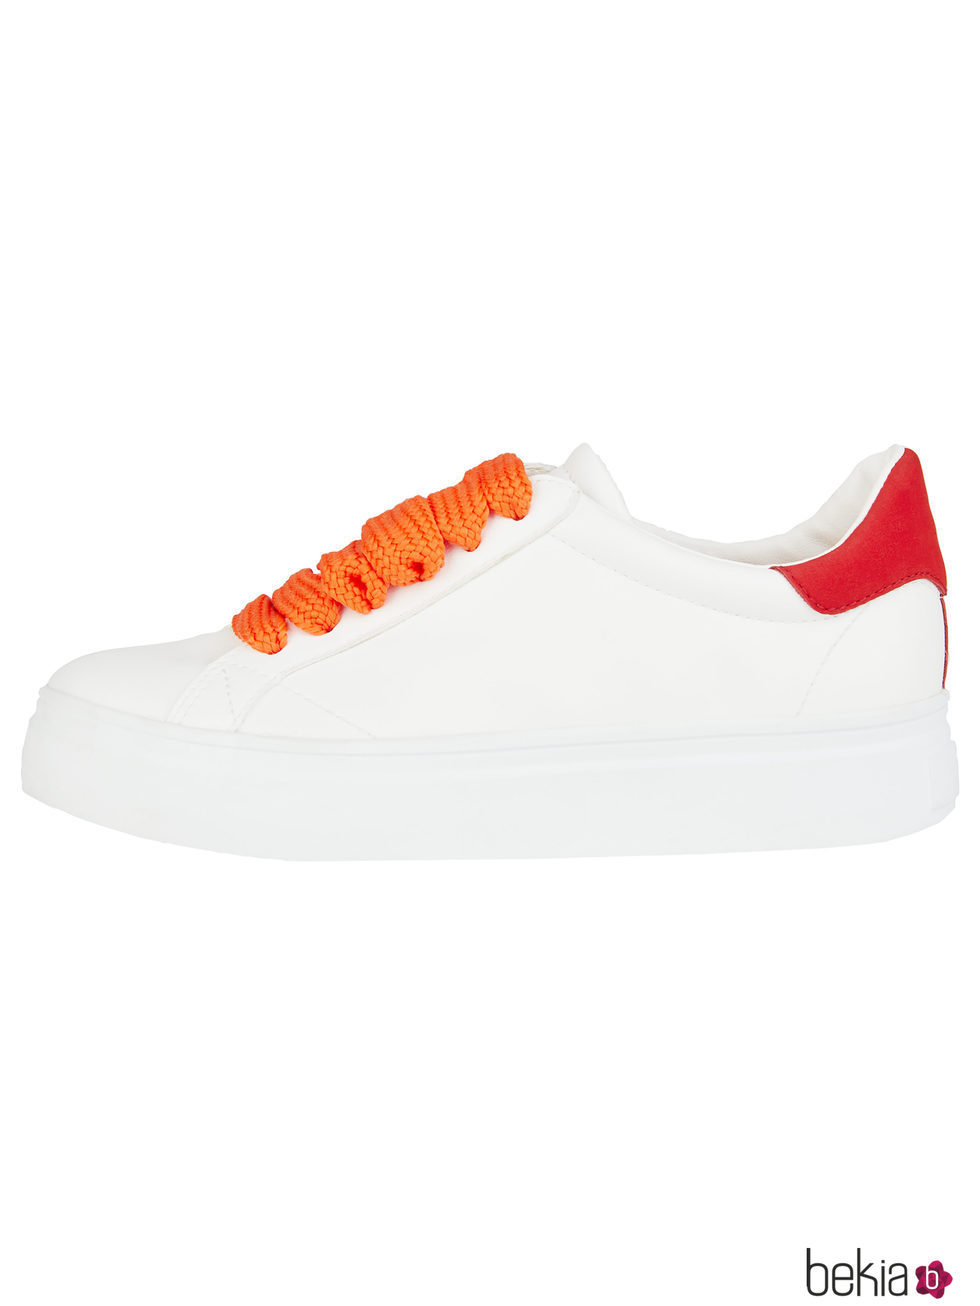 Sneakers blancos con cordones naranjas para mujer de la colección de Primavera-Verano 2018 de Esprit